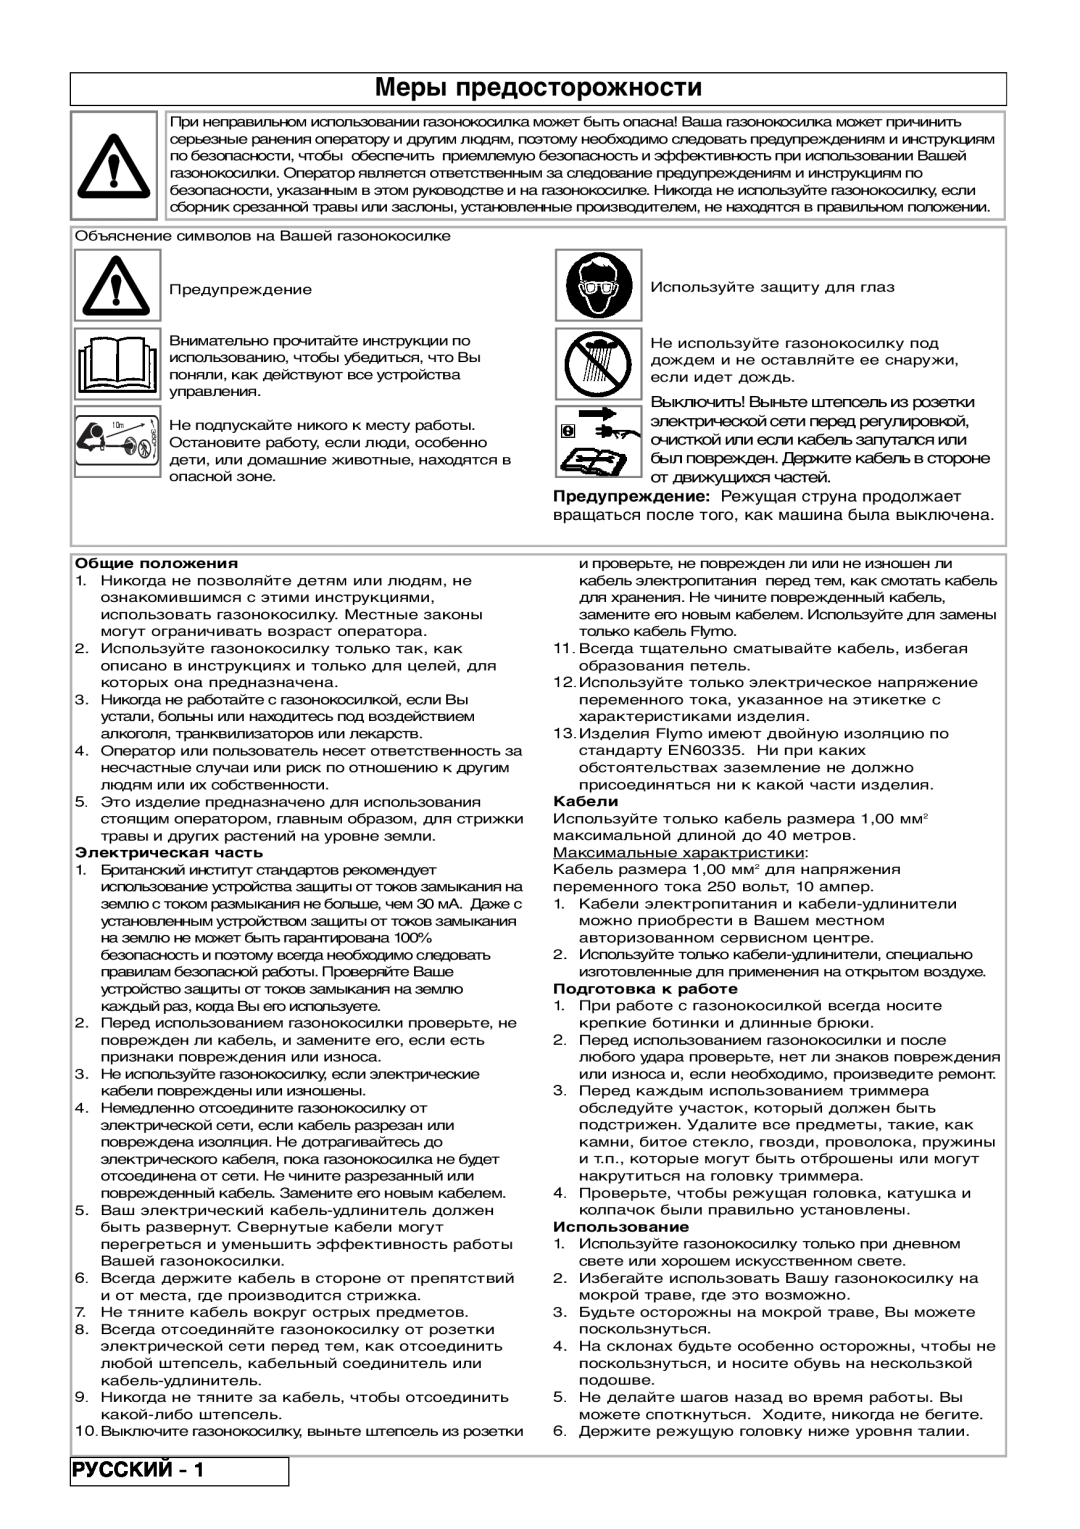 Flymo 800/1000 manual Меры предосторожности, Русский 